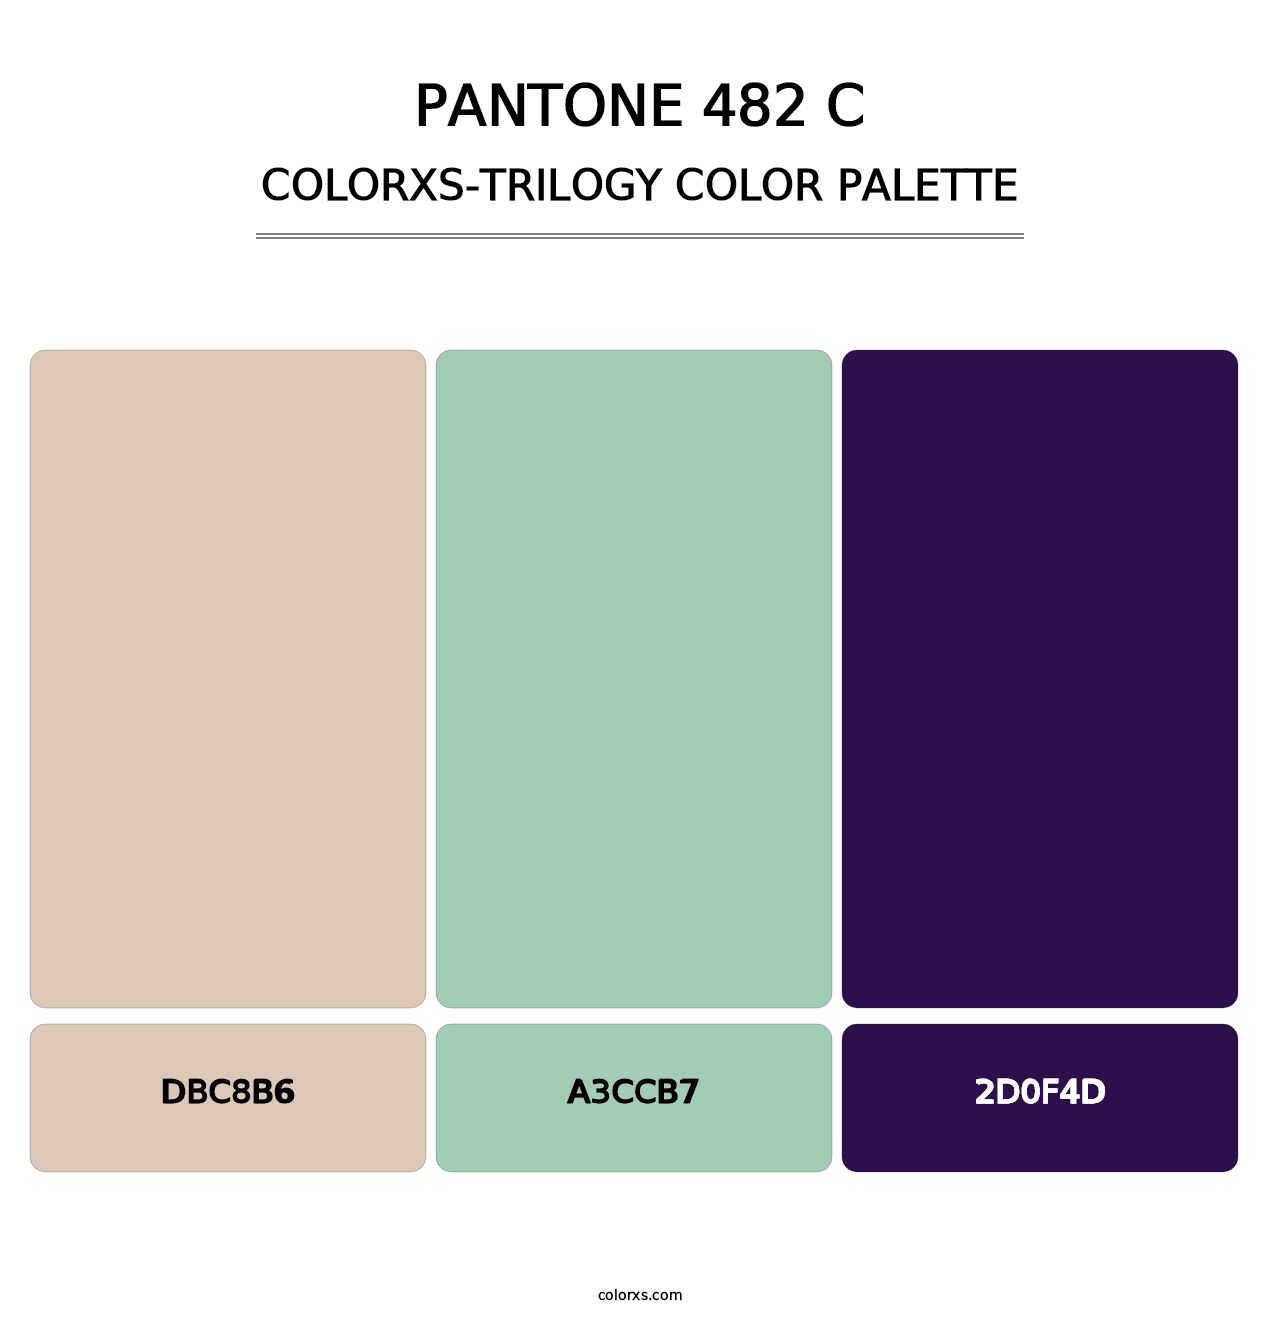 PANTONE 482 C - Colorxs Trilogy Palette